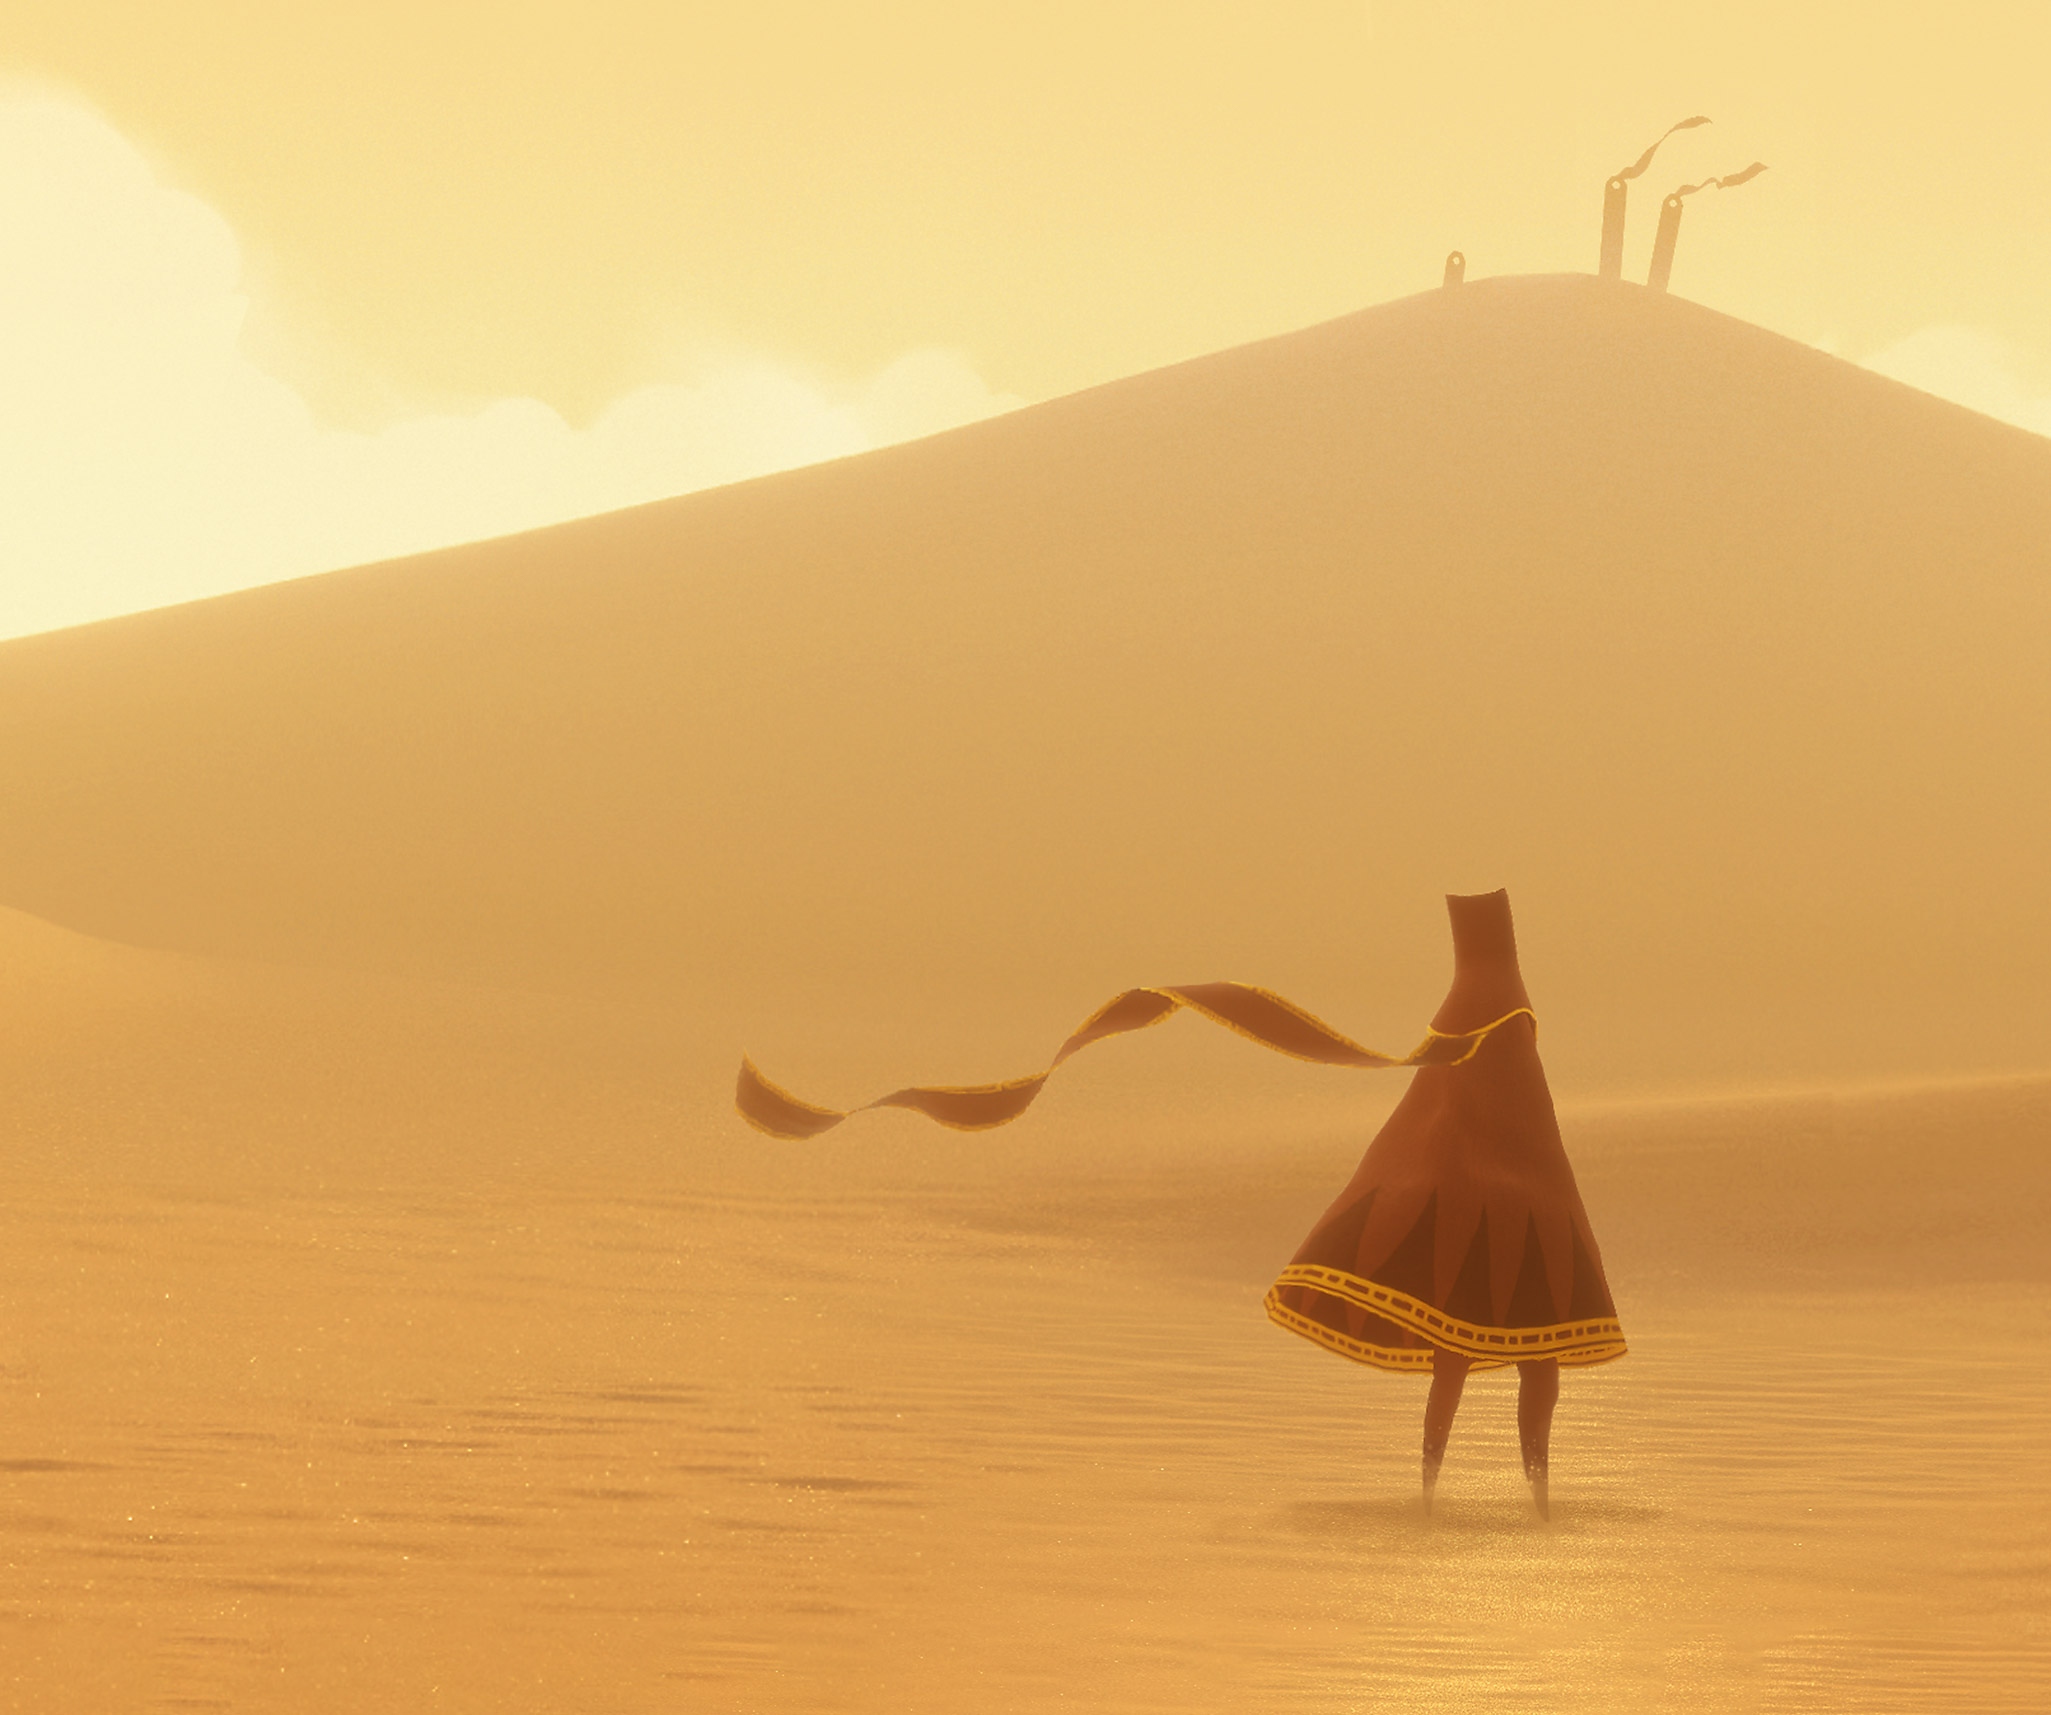 Arte principal de Journey que muestra al personaje principal "The Traveller" parado en el enorme y soleado desierto.